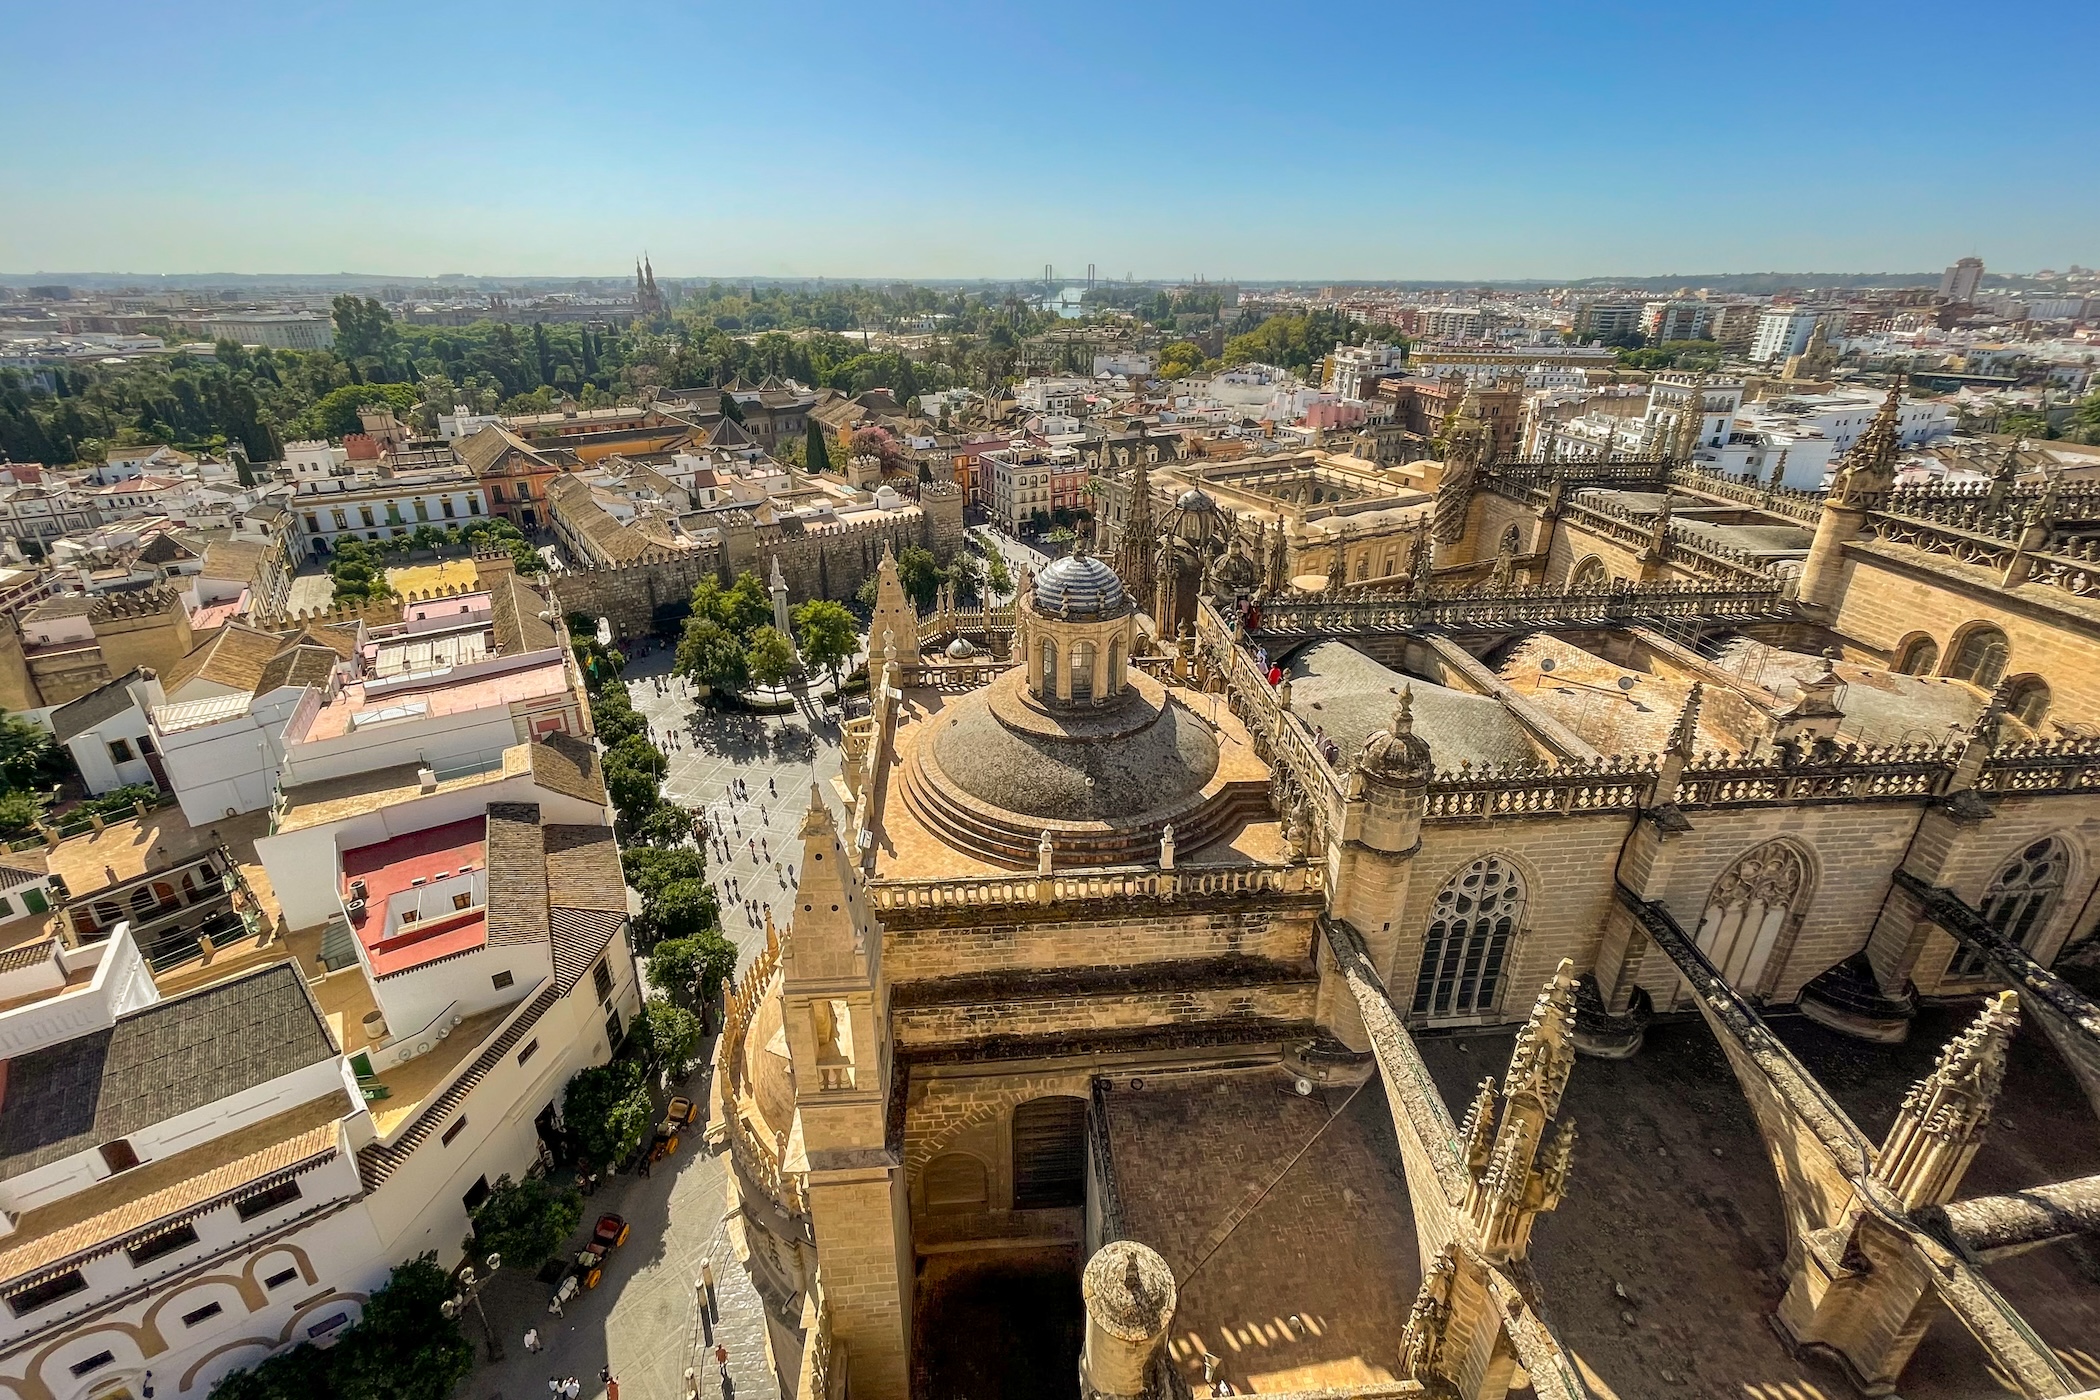 Ontdek de leukste wijken om te verblijven in Sevilla